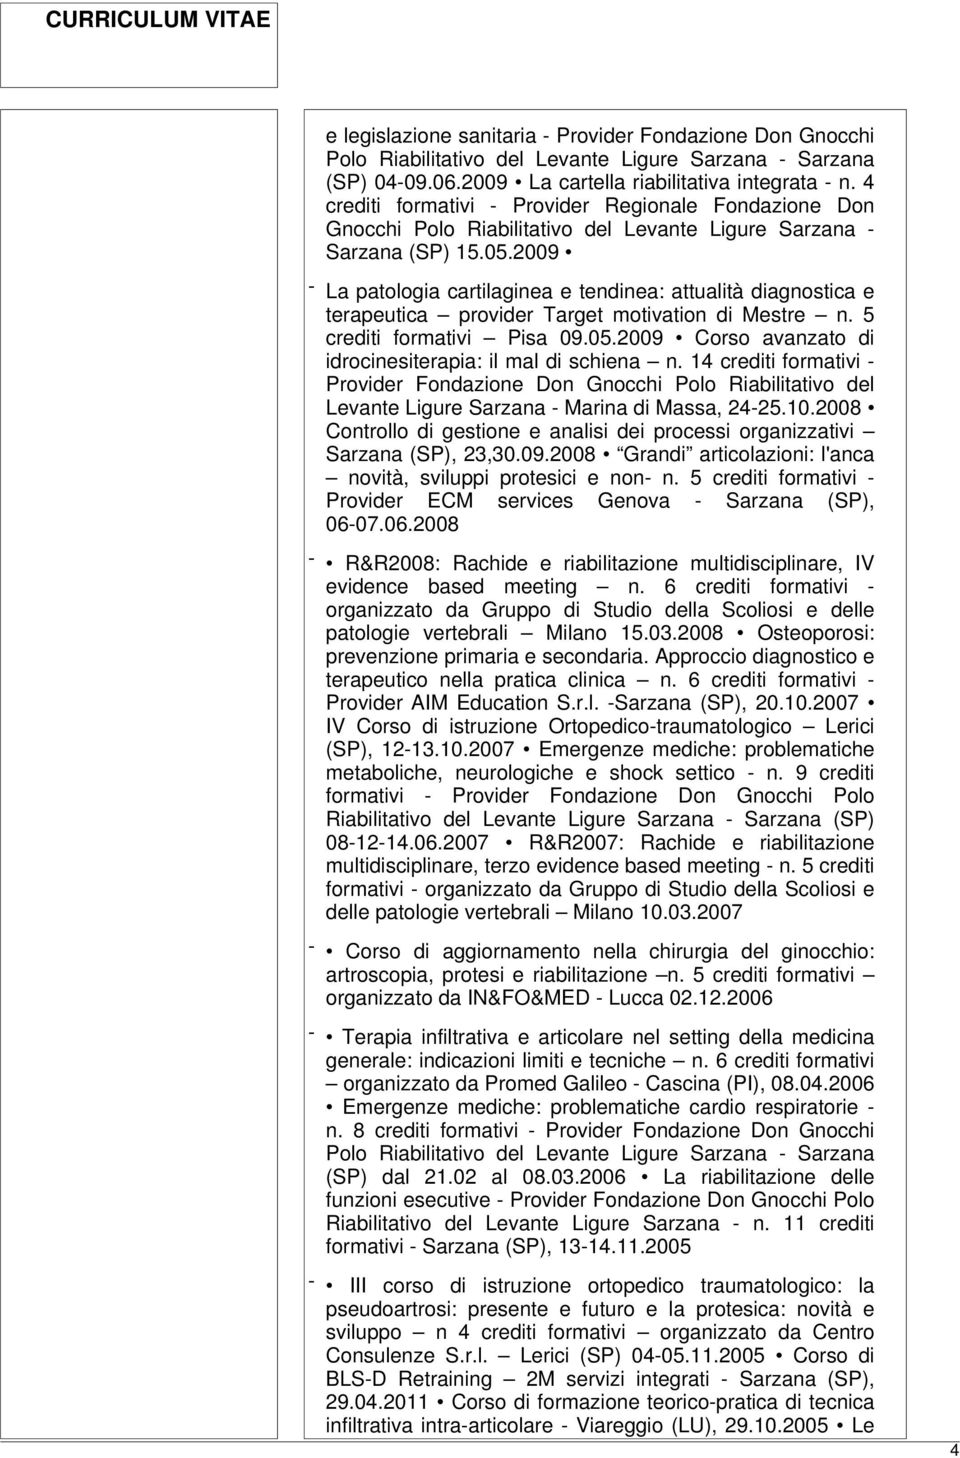 2009 - La patologia cartilaginea e tendinea: attualità diagnostica e terapeutica provider Target motivation di Mestre n. 5 crediti formativi Pisa 09.05.